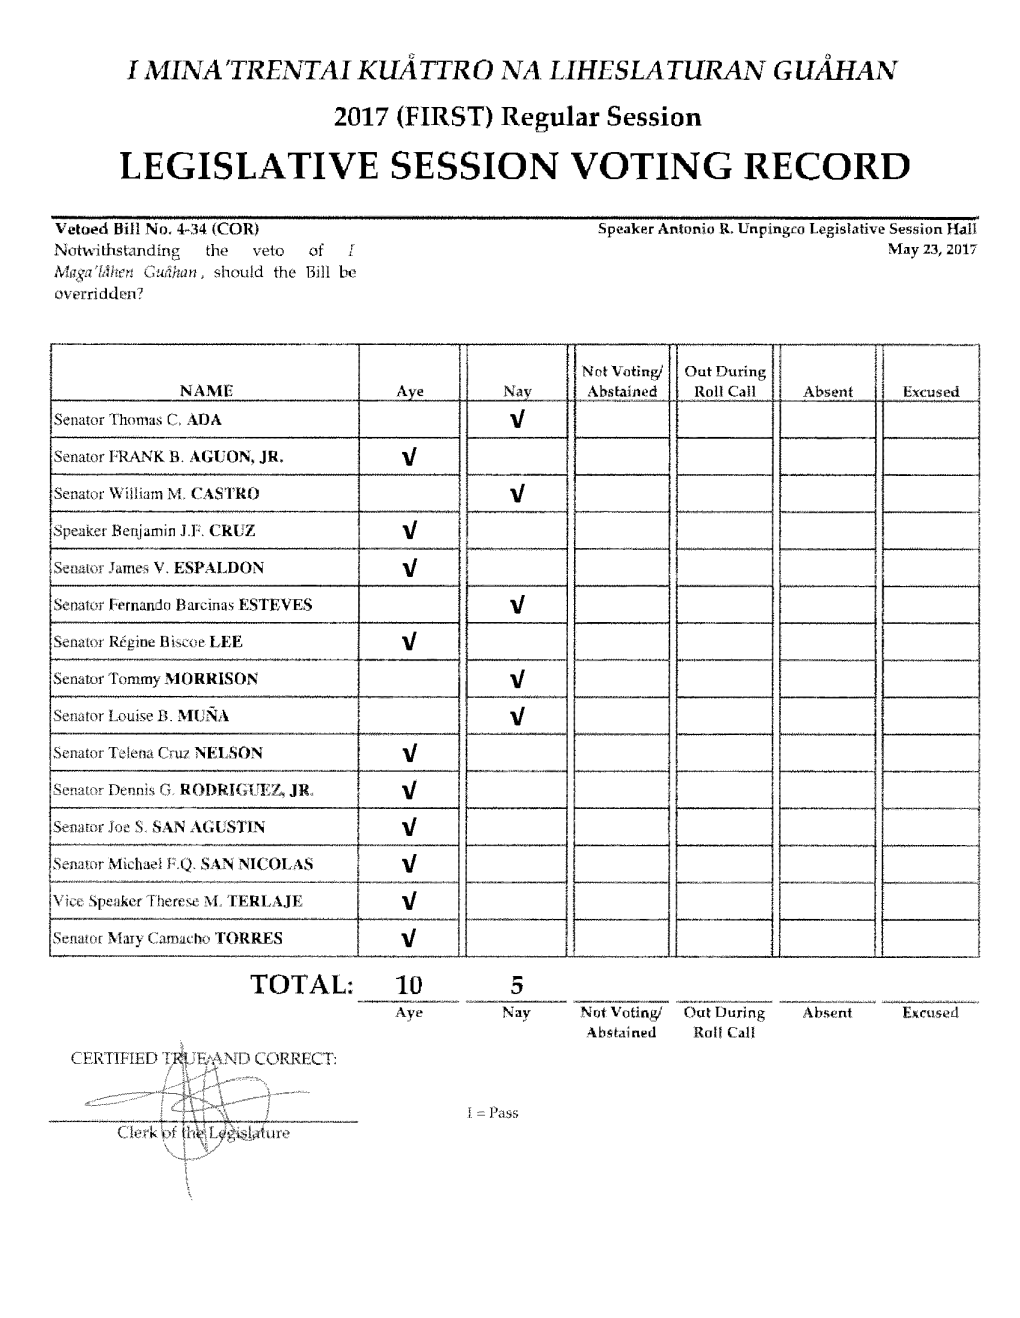 Voting Record